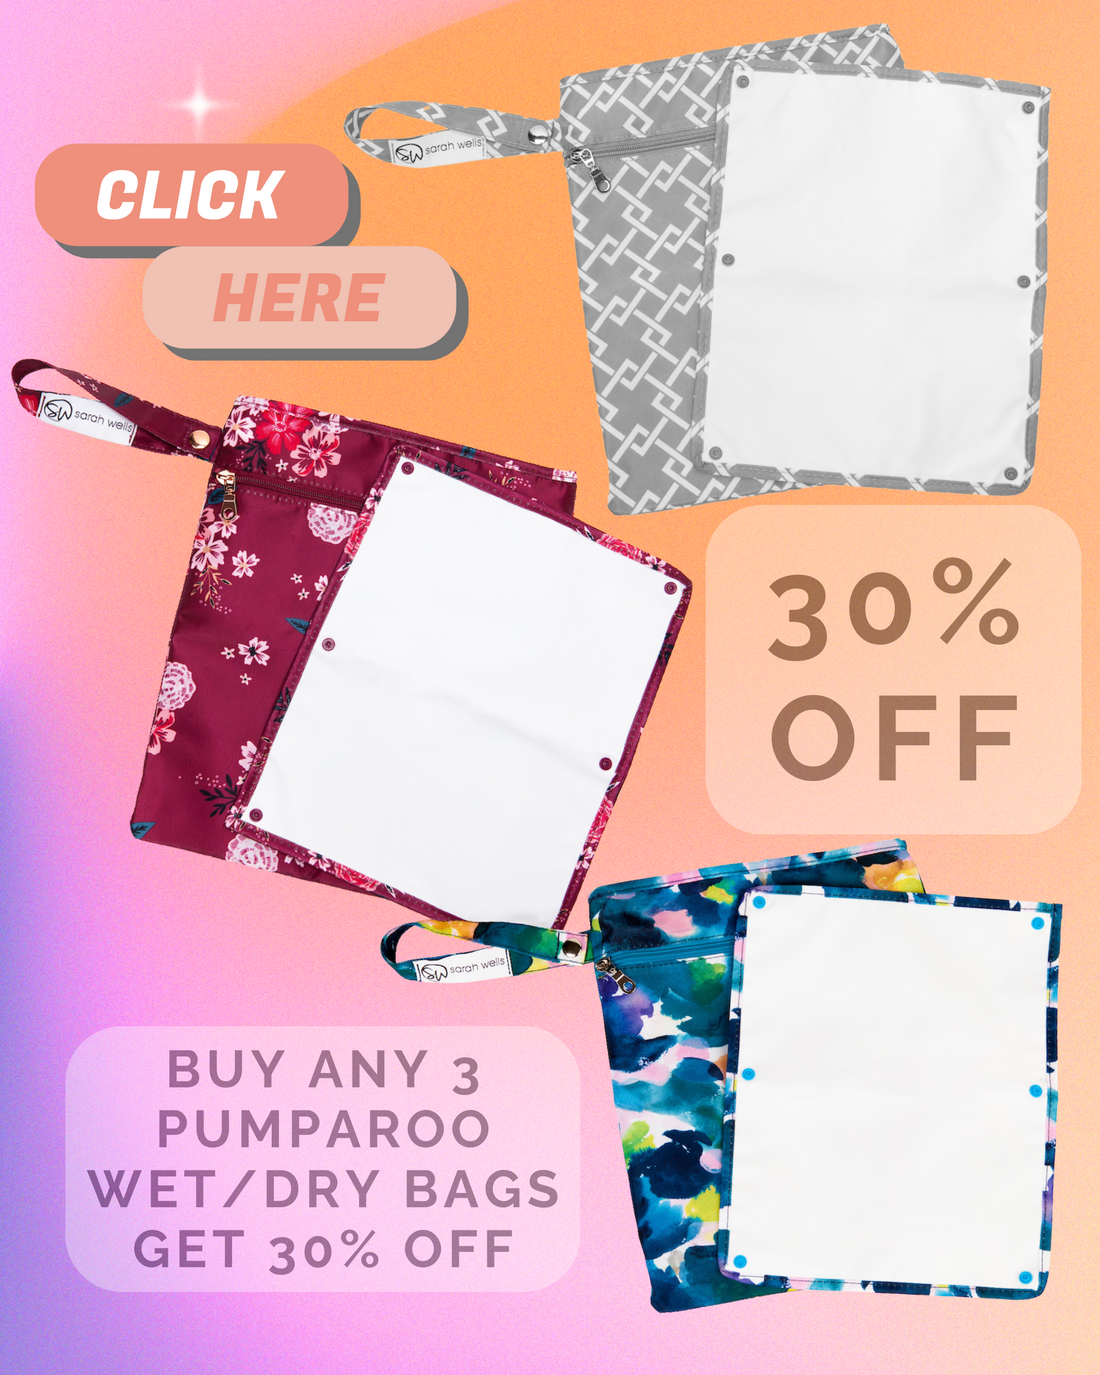 Buy Any 3 Get 30% Off Pumparoo Pack